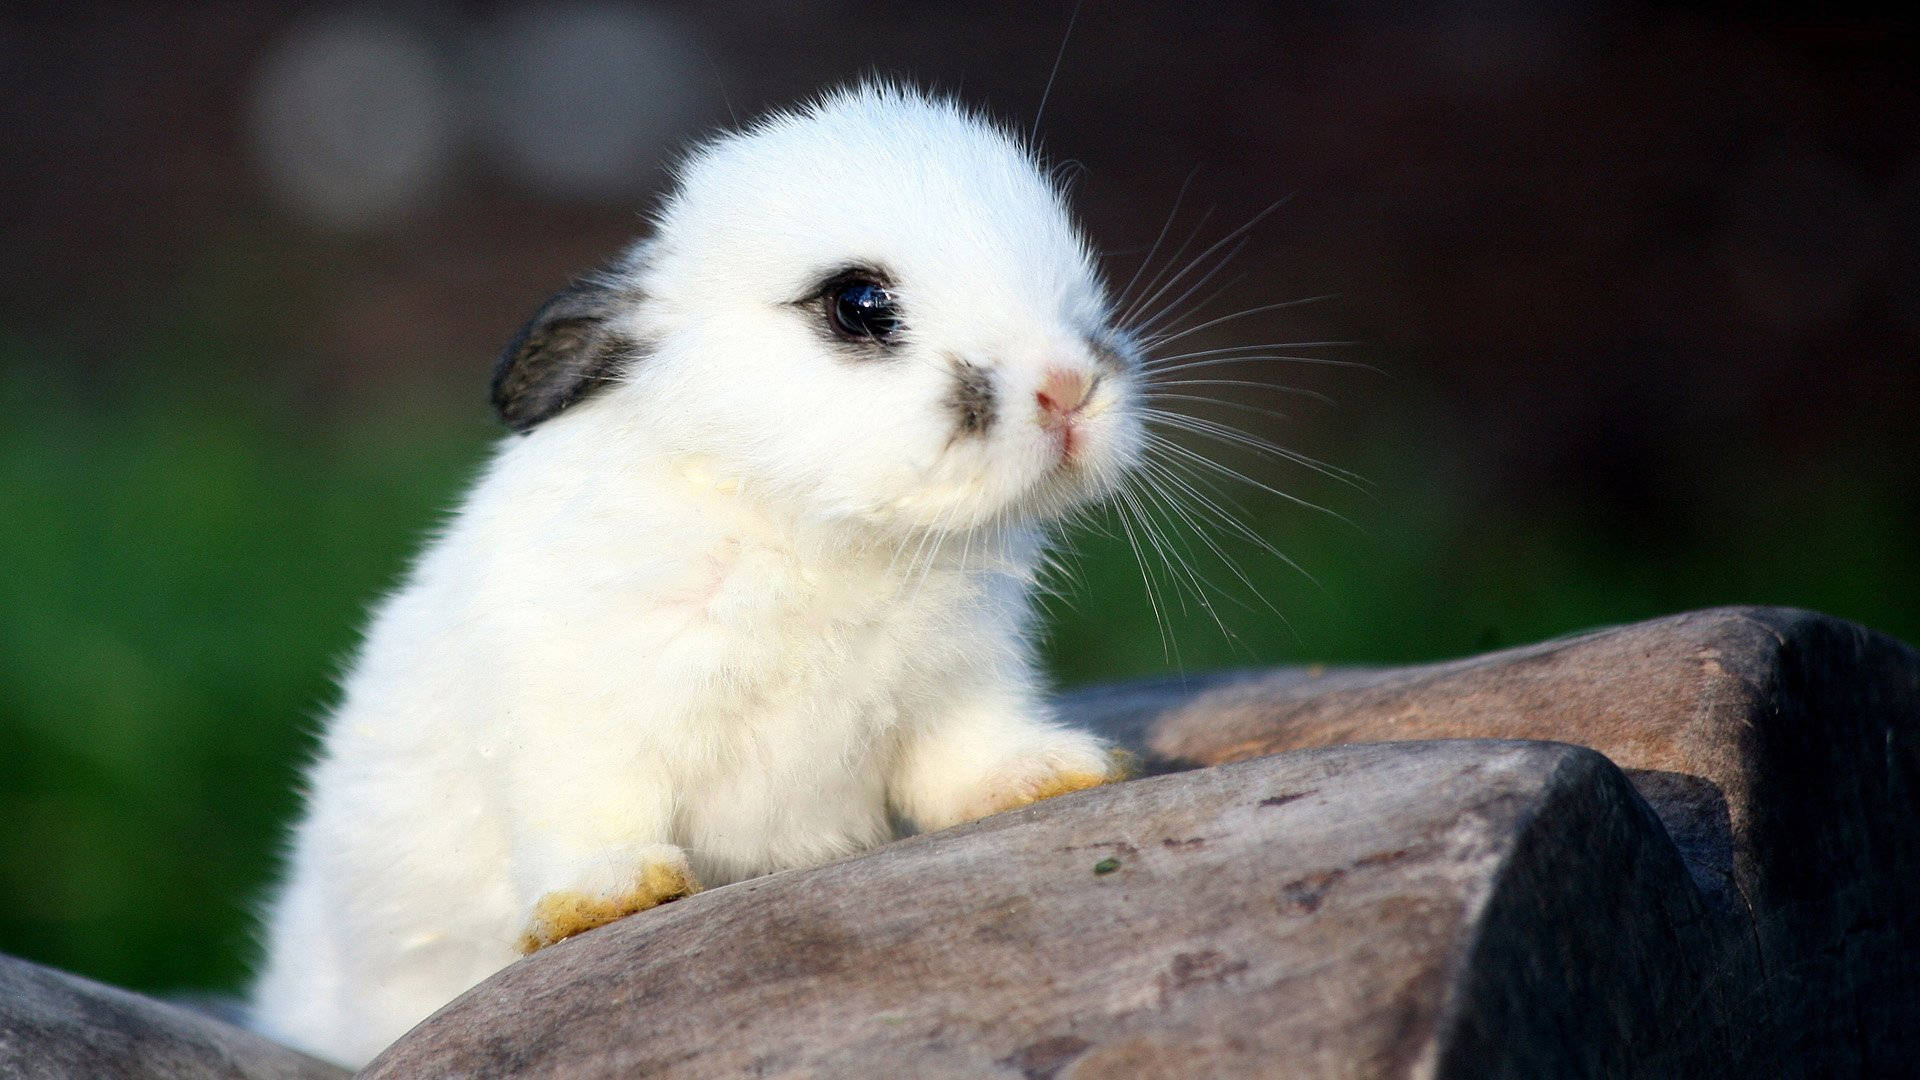 little baby bunnies